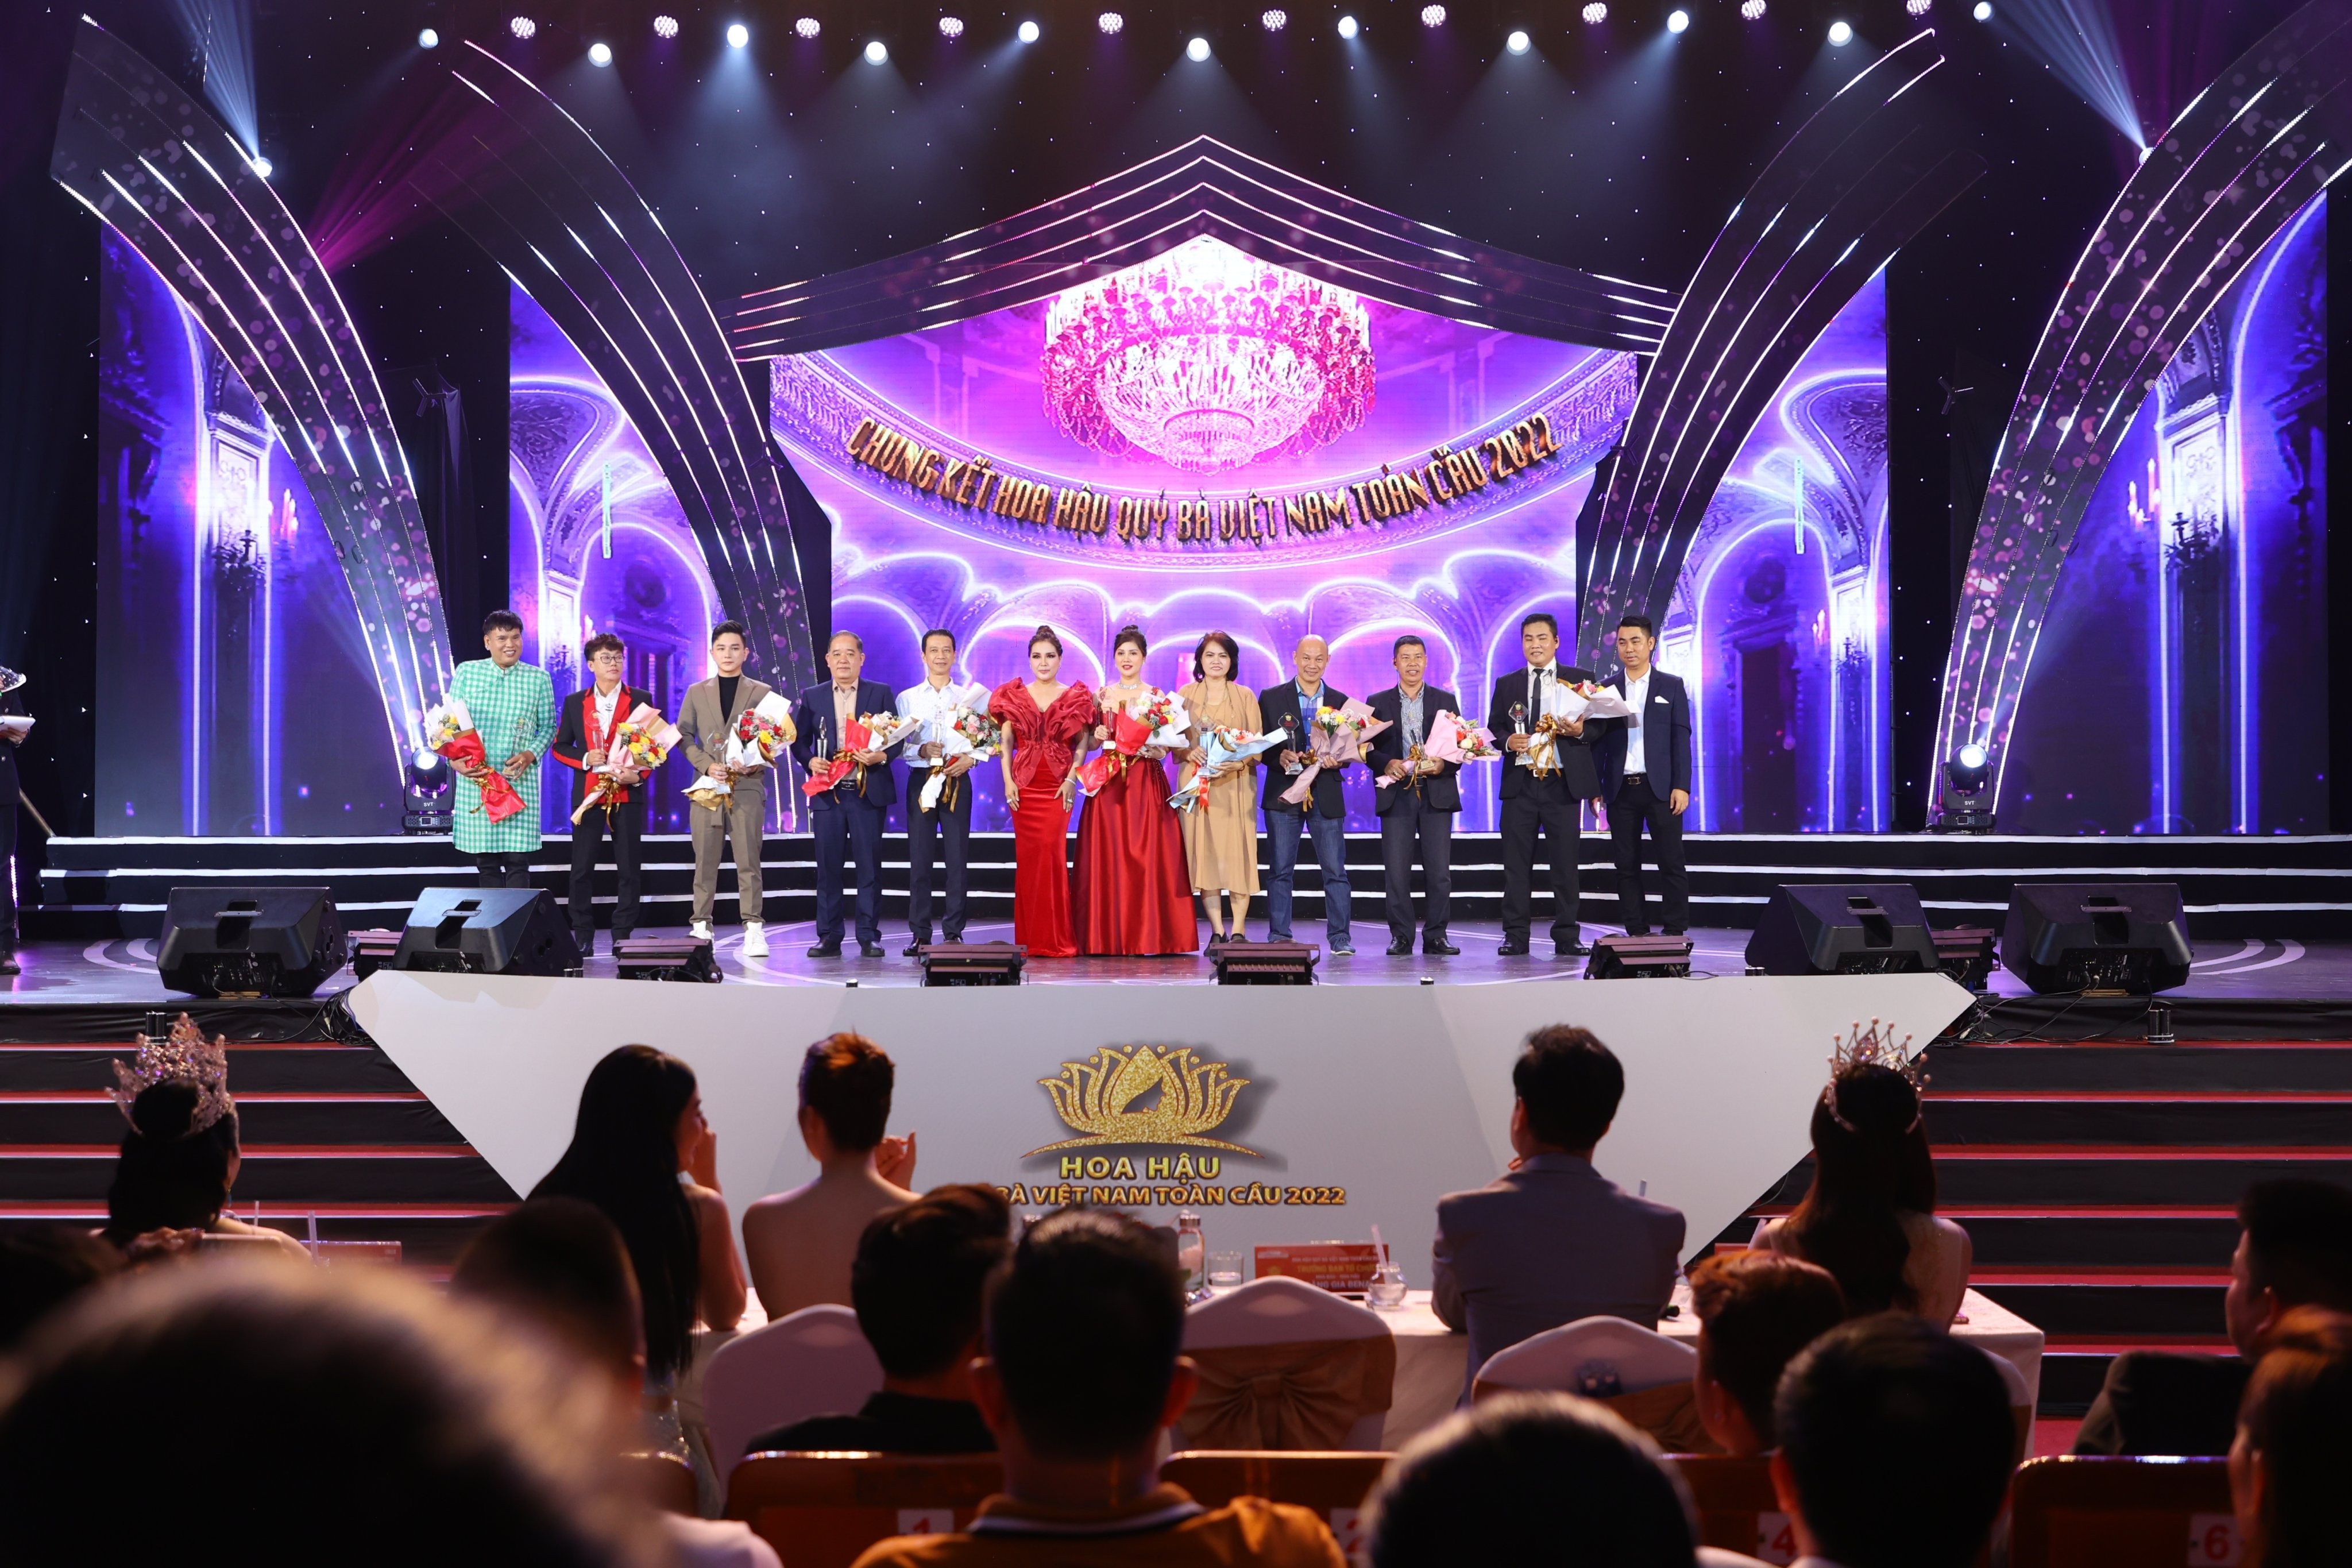 DLG Hotel mang lại không gian đẳng cấp 5 sao cho các thí sinh Hoa hậu Quý bà Việt Nam Toàn cầu 2022